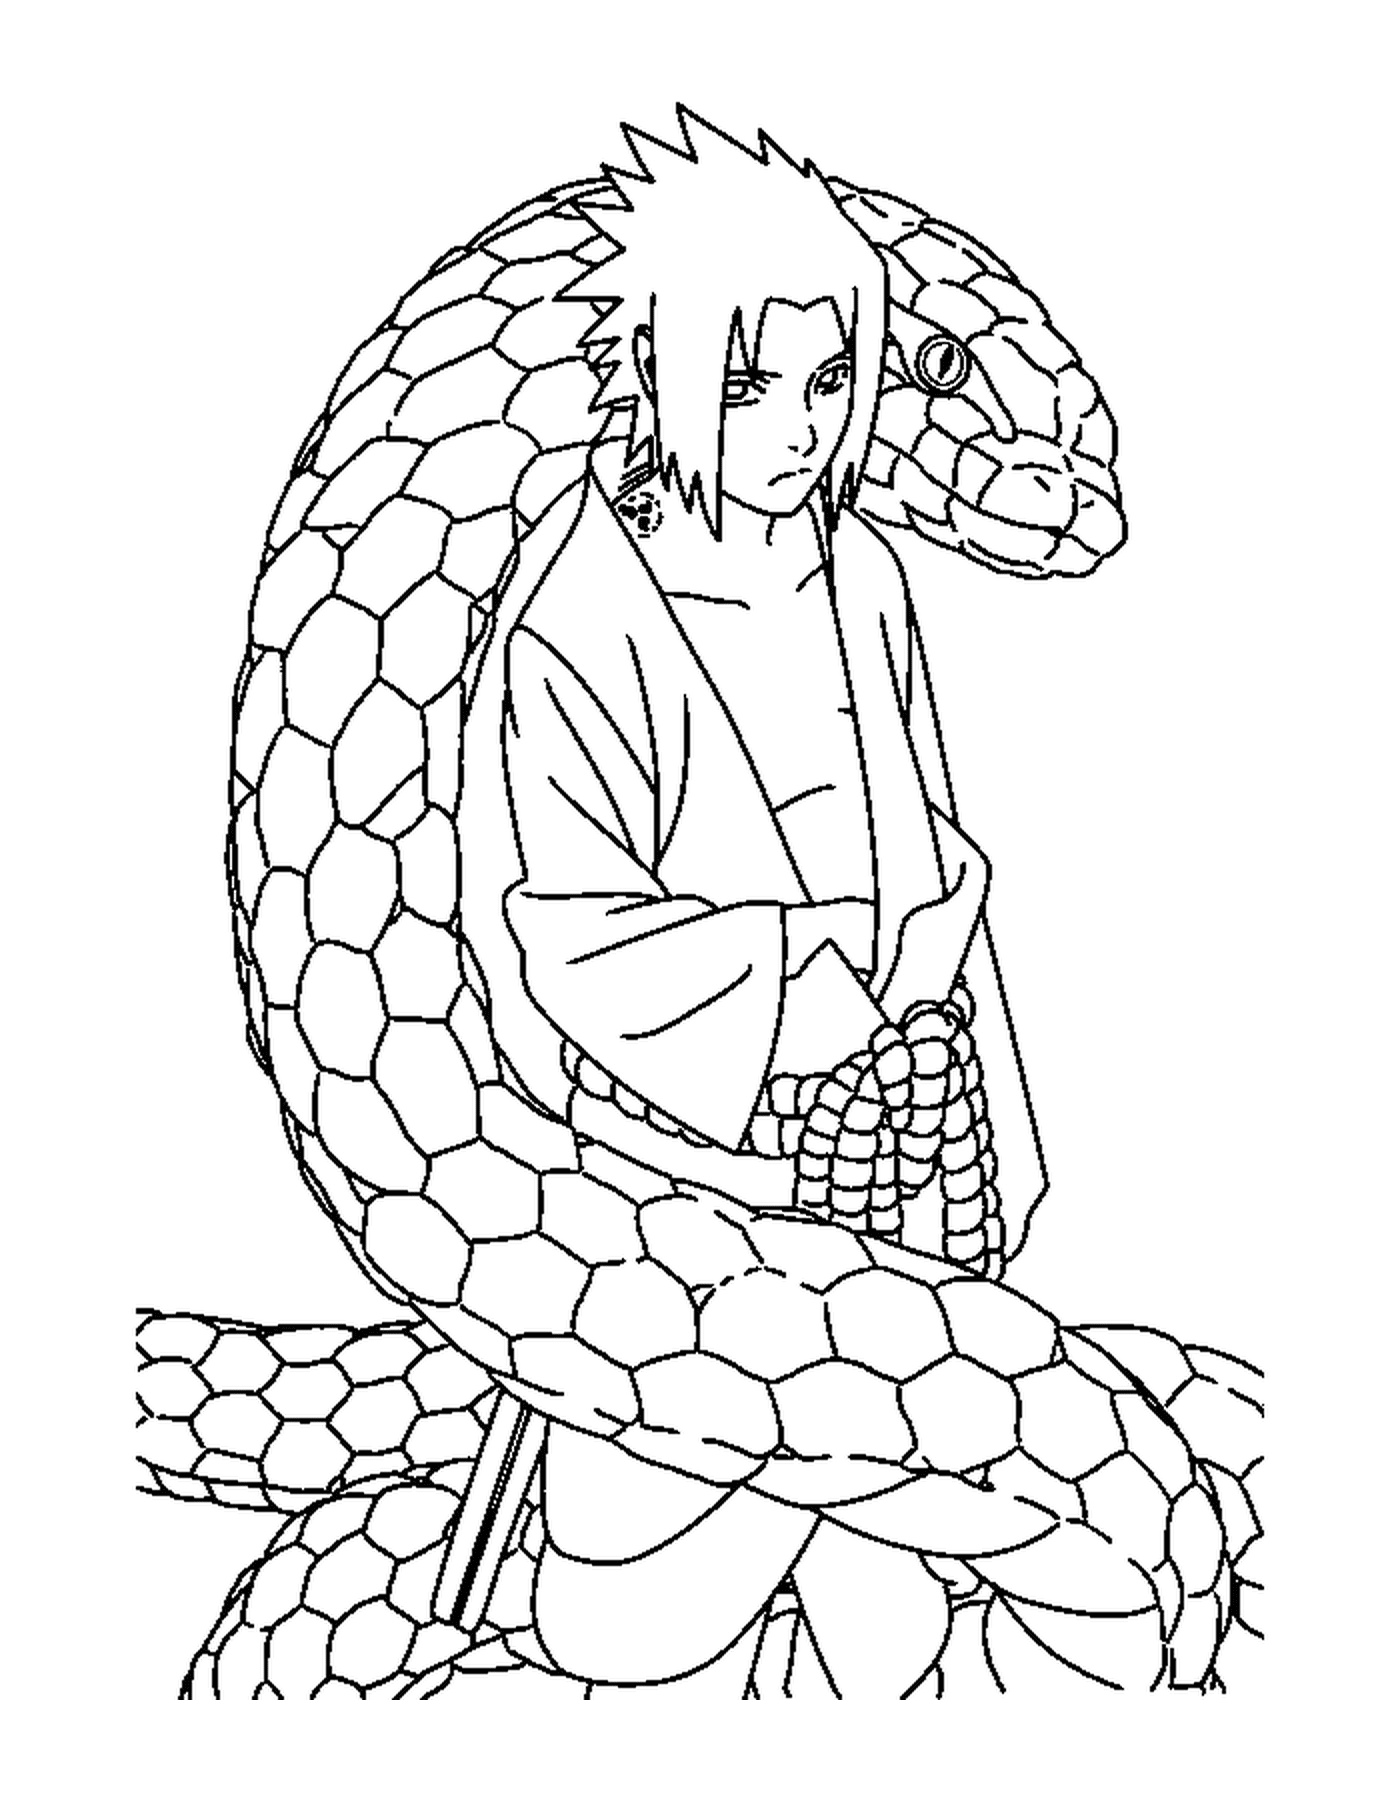  Un hombre sentado sobre una gran serpiente 